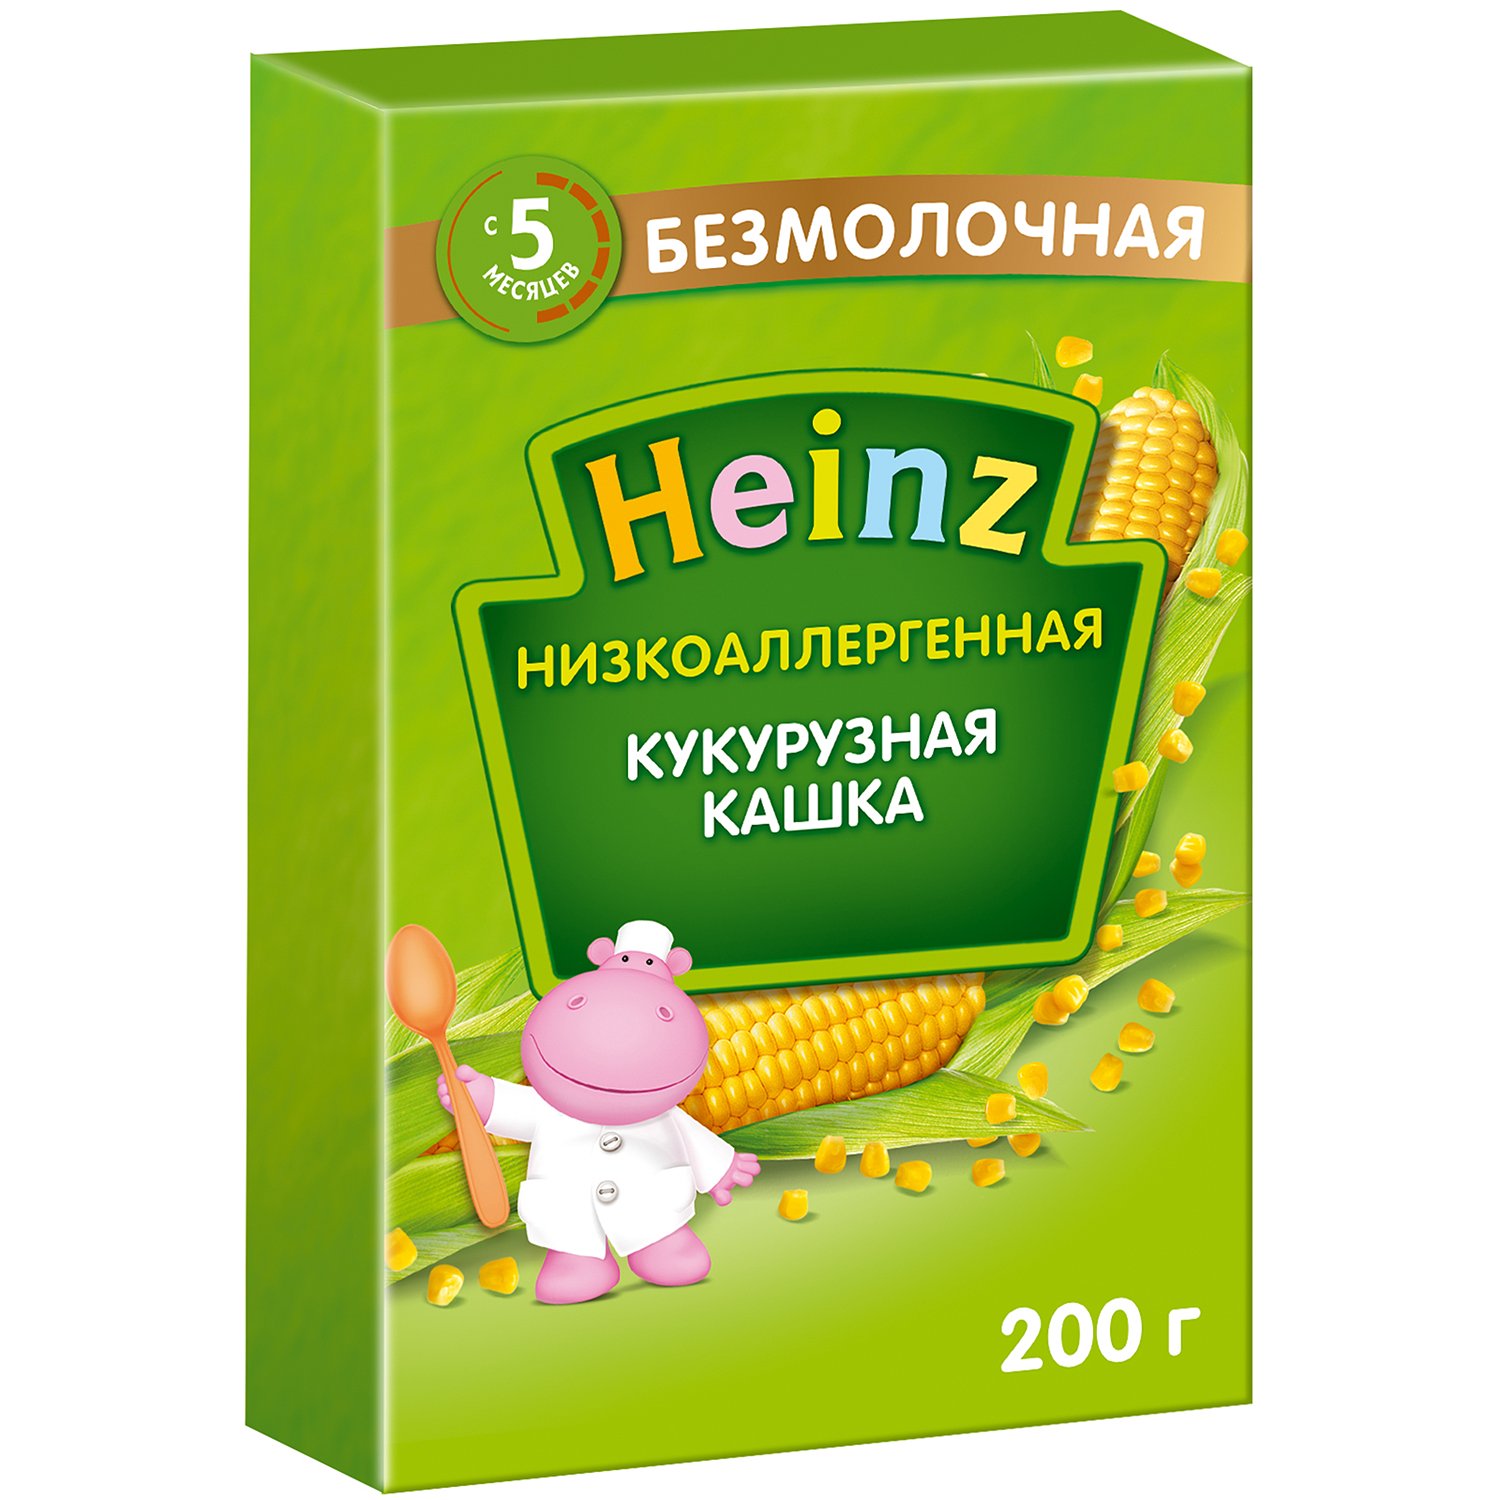 Каша Heinz безмолочная низкоаллергенная кукуруза 200 г с 5 месяцев - фото 1